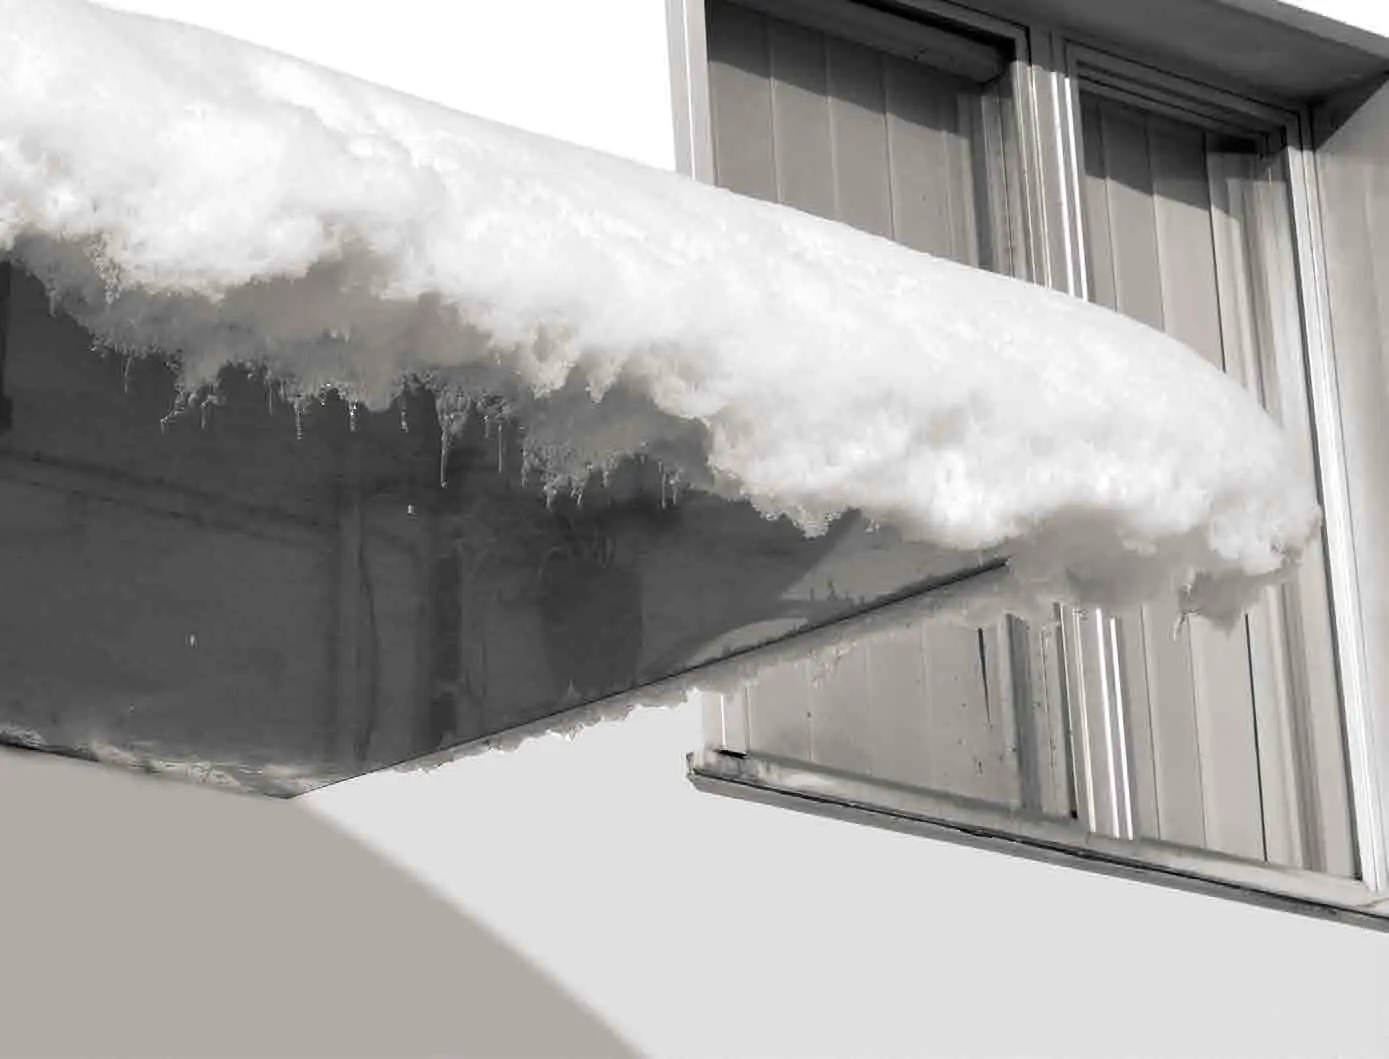 Freitragendes Vordach mit Schnee bedeckt